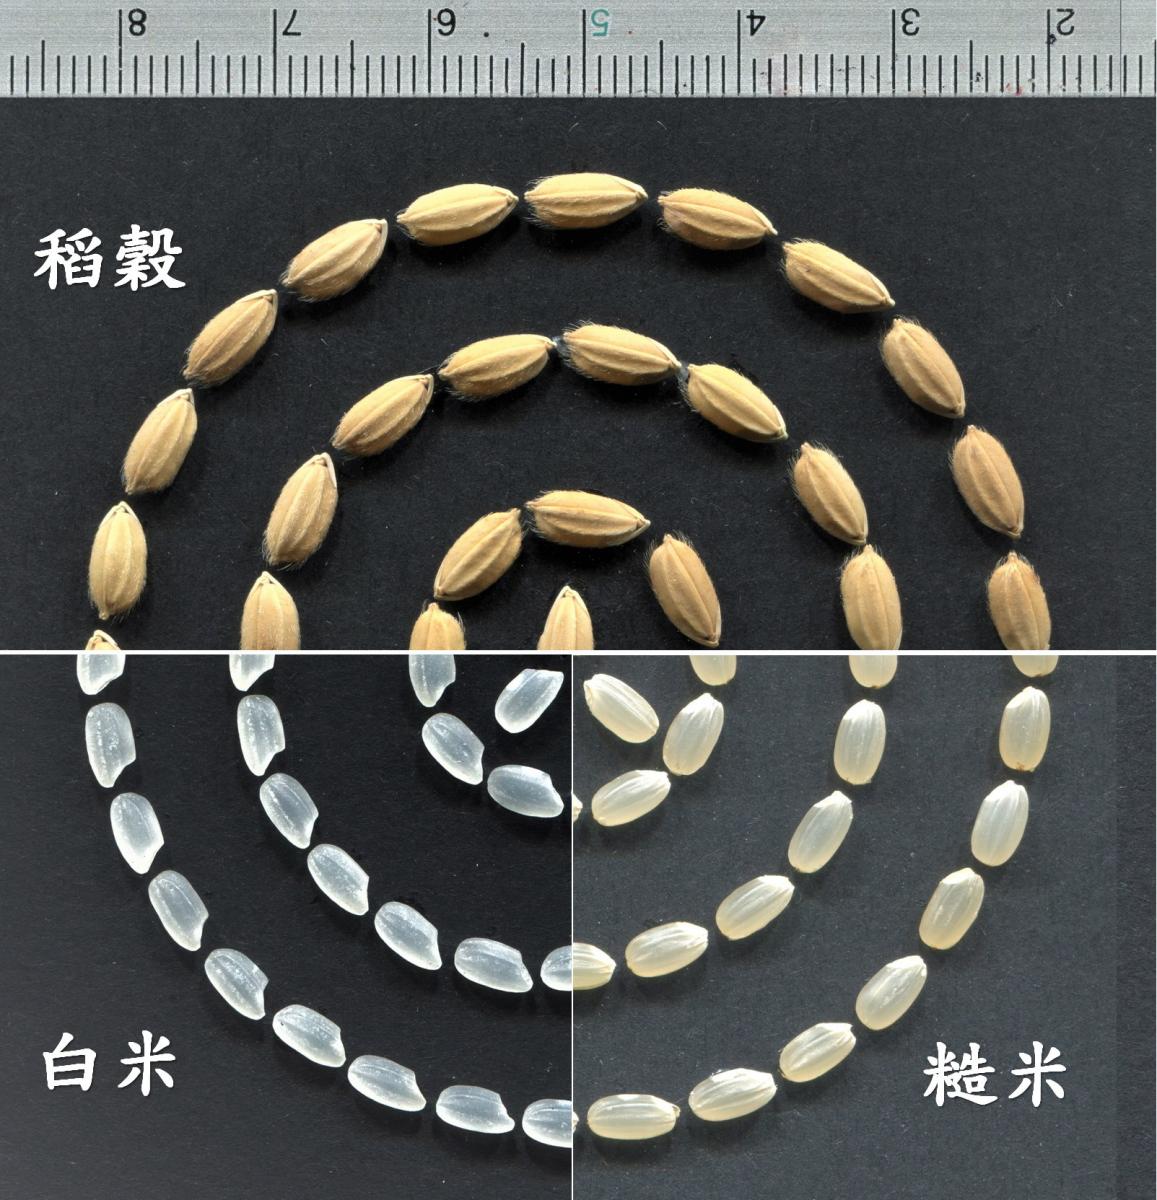 臺南19號的稻穀、糙米及白米性狀(圖片上方尺規單位為公分)